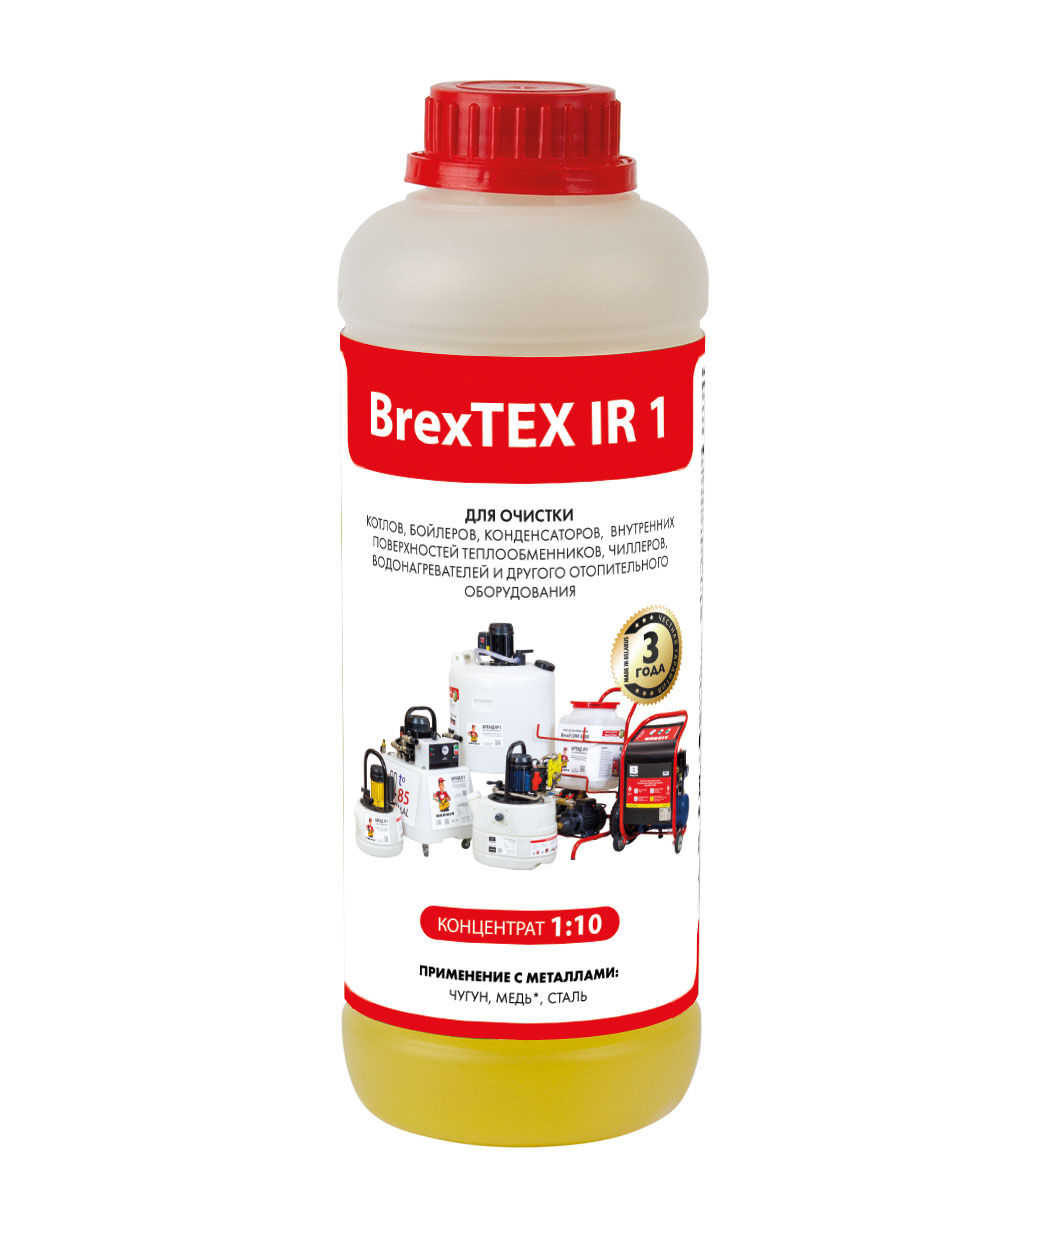 Реагент для очистки теплообменного и отопительного оборудования BrexTEX IR 1 brexit